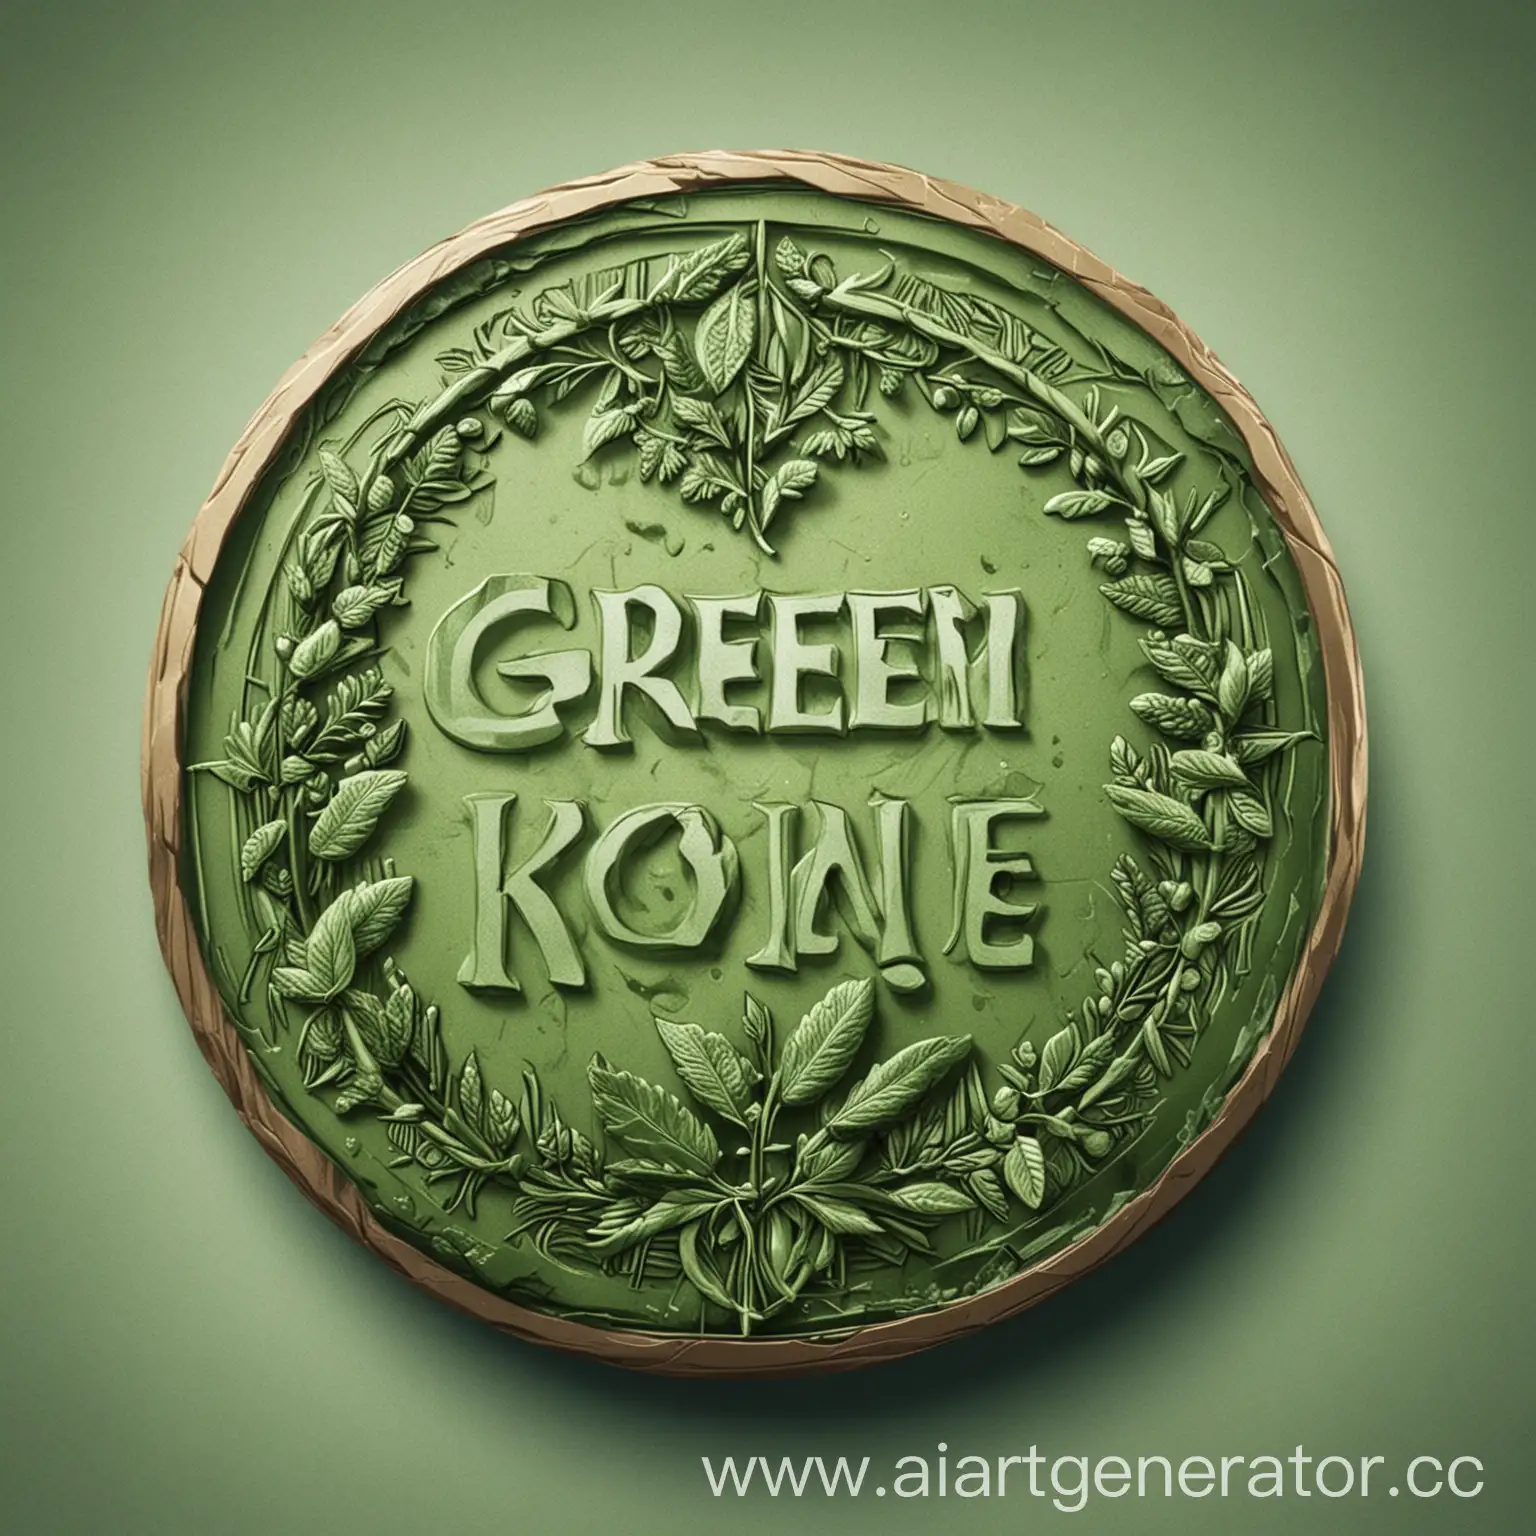 создай  круглую картинку зеленой монетки в 2д стиле на ней должно быть написано "GREENKIREE"